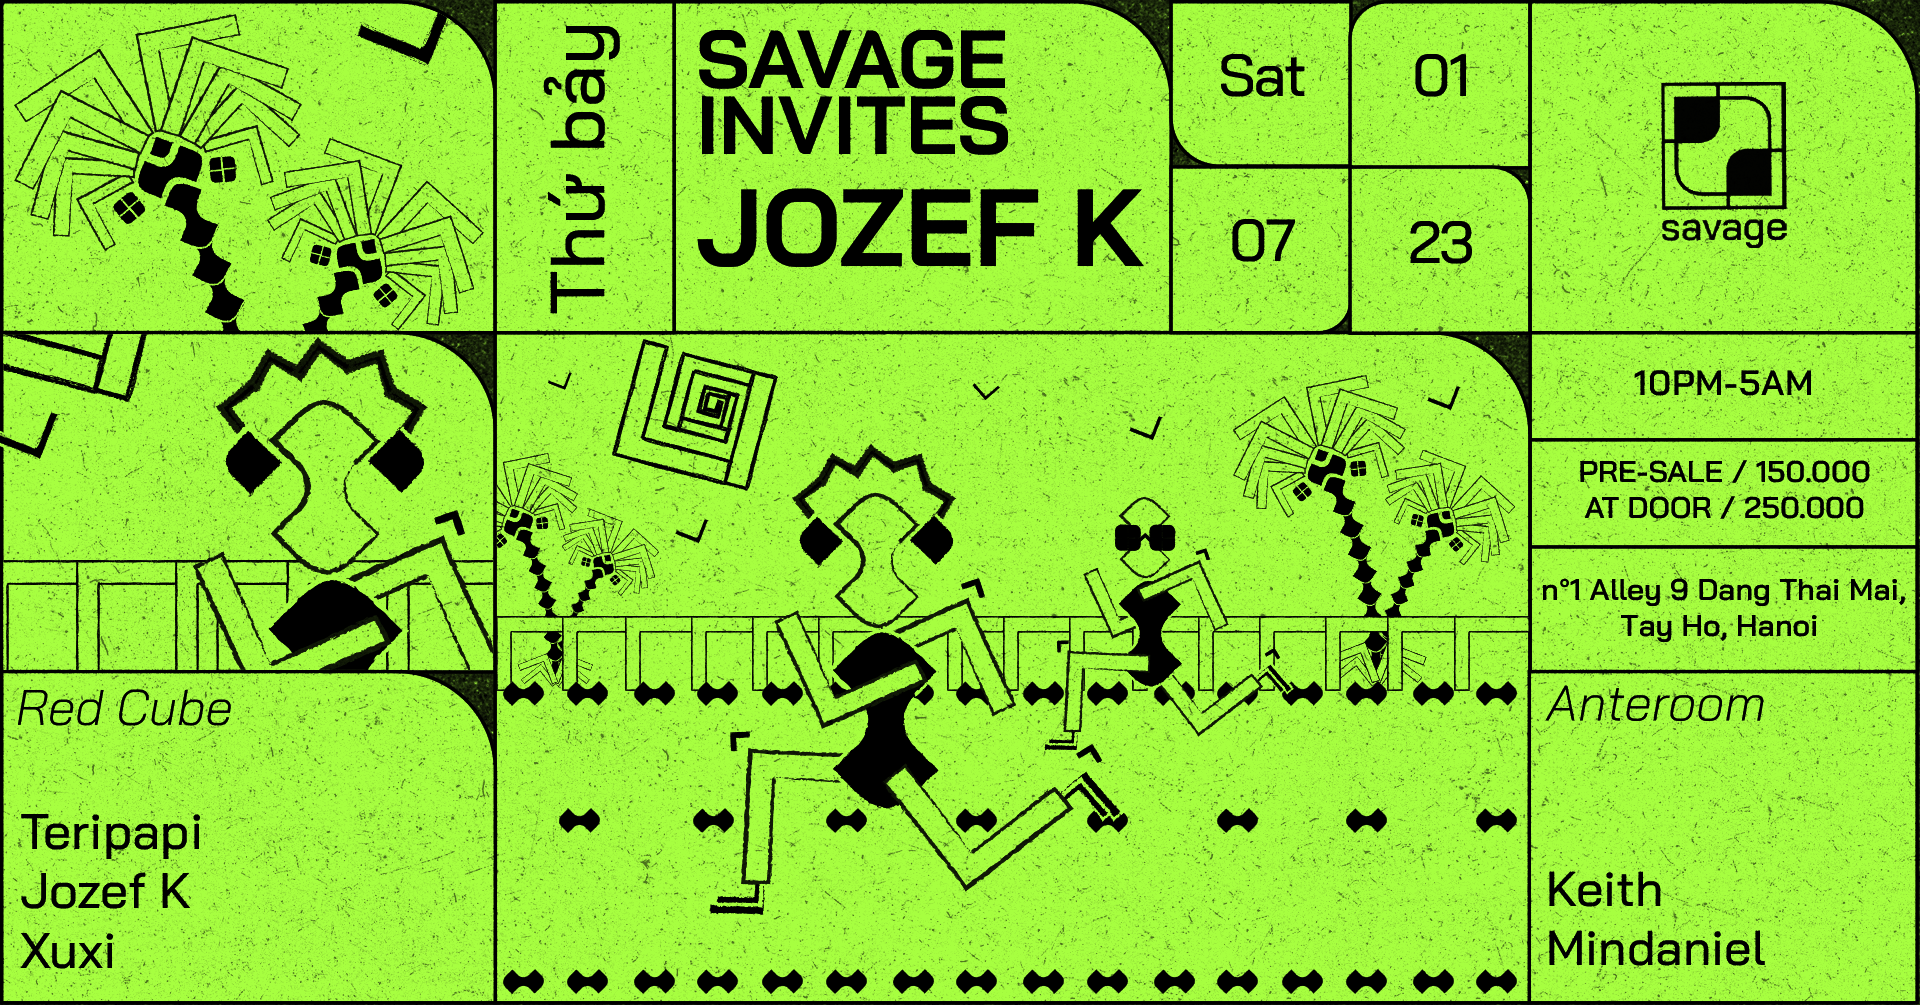 Savage Invites Jozef K - フライヤー裏